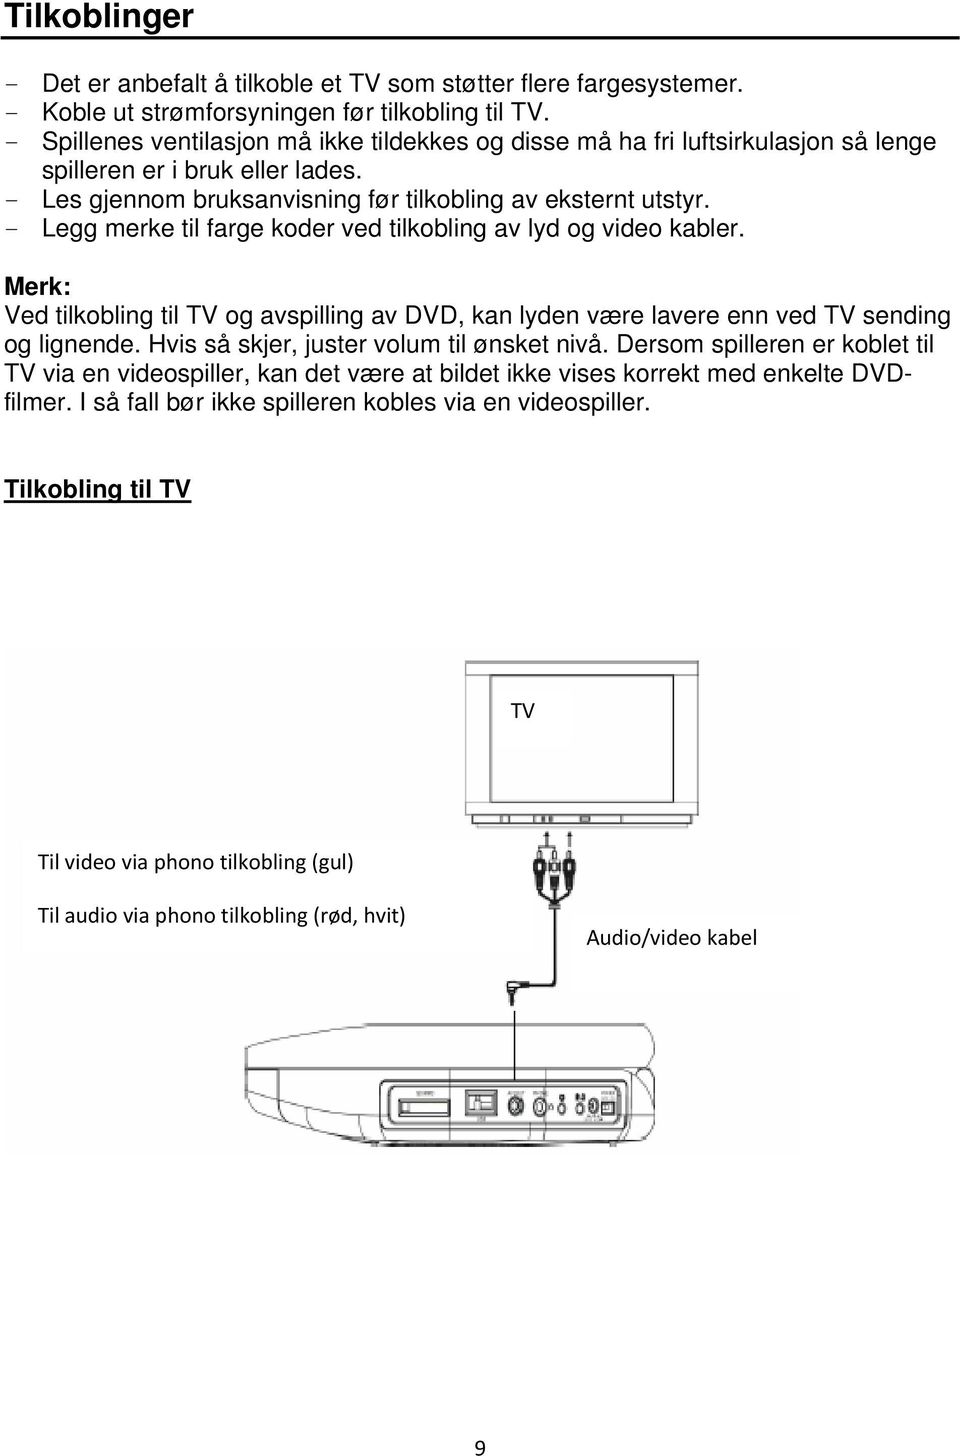 - Legg merke til farge koder ved tilkobling av lyd og video kabler. Merk: Ved tilkobling til TV og avspilling av DVD, kan lyden være lavere enn ved TV sending og lignende.